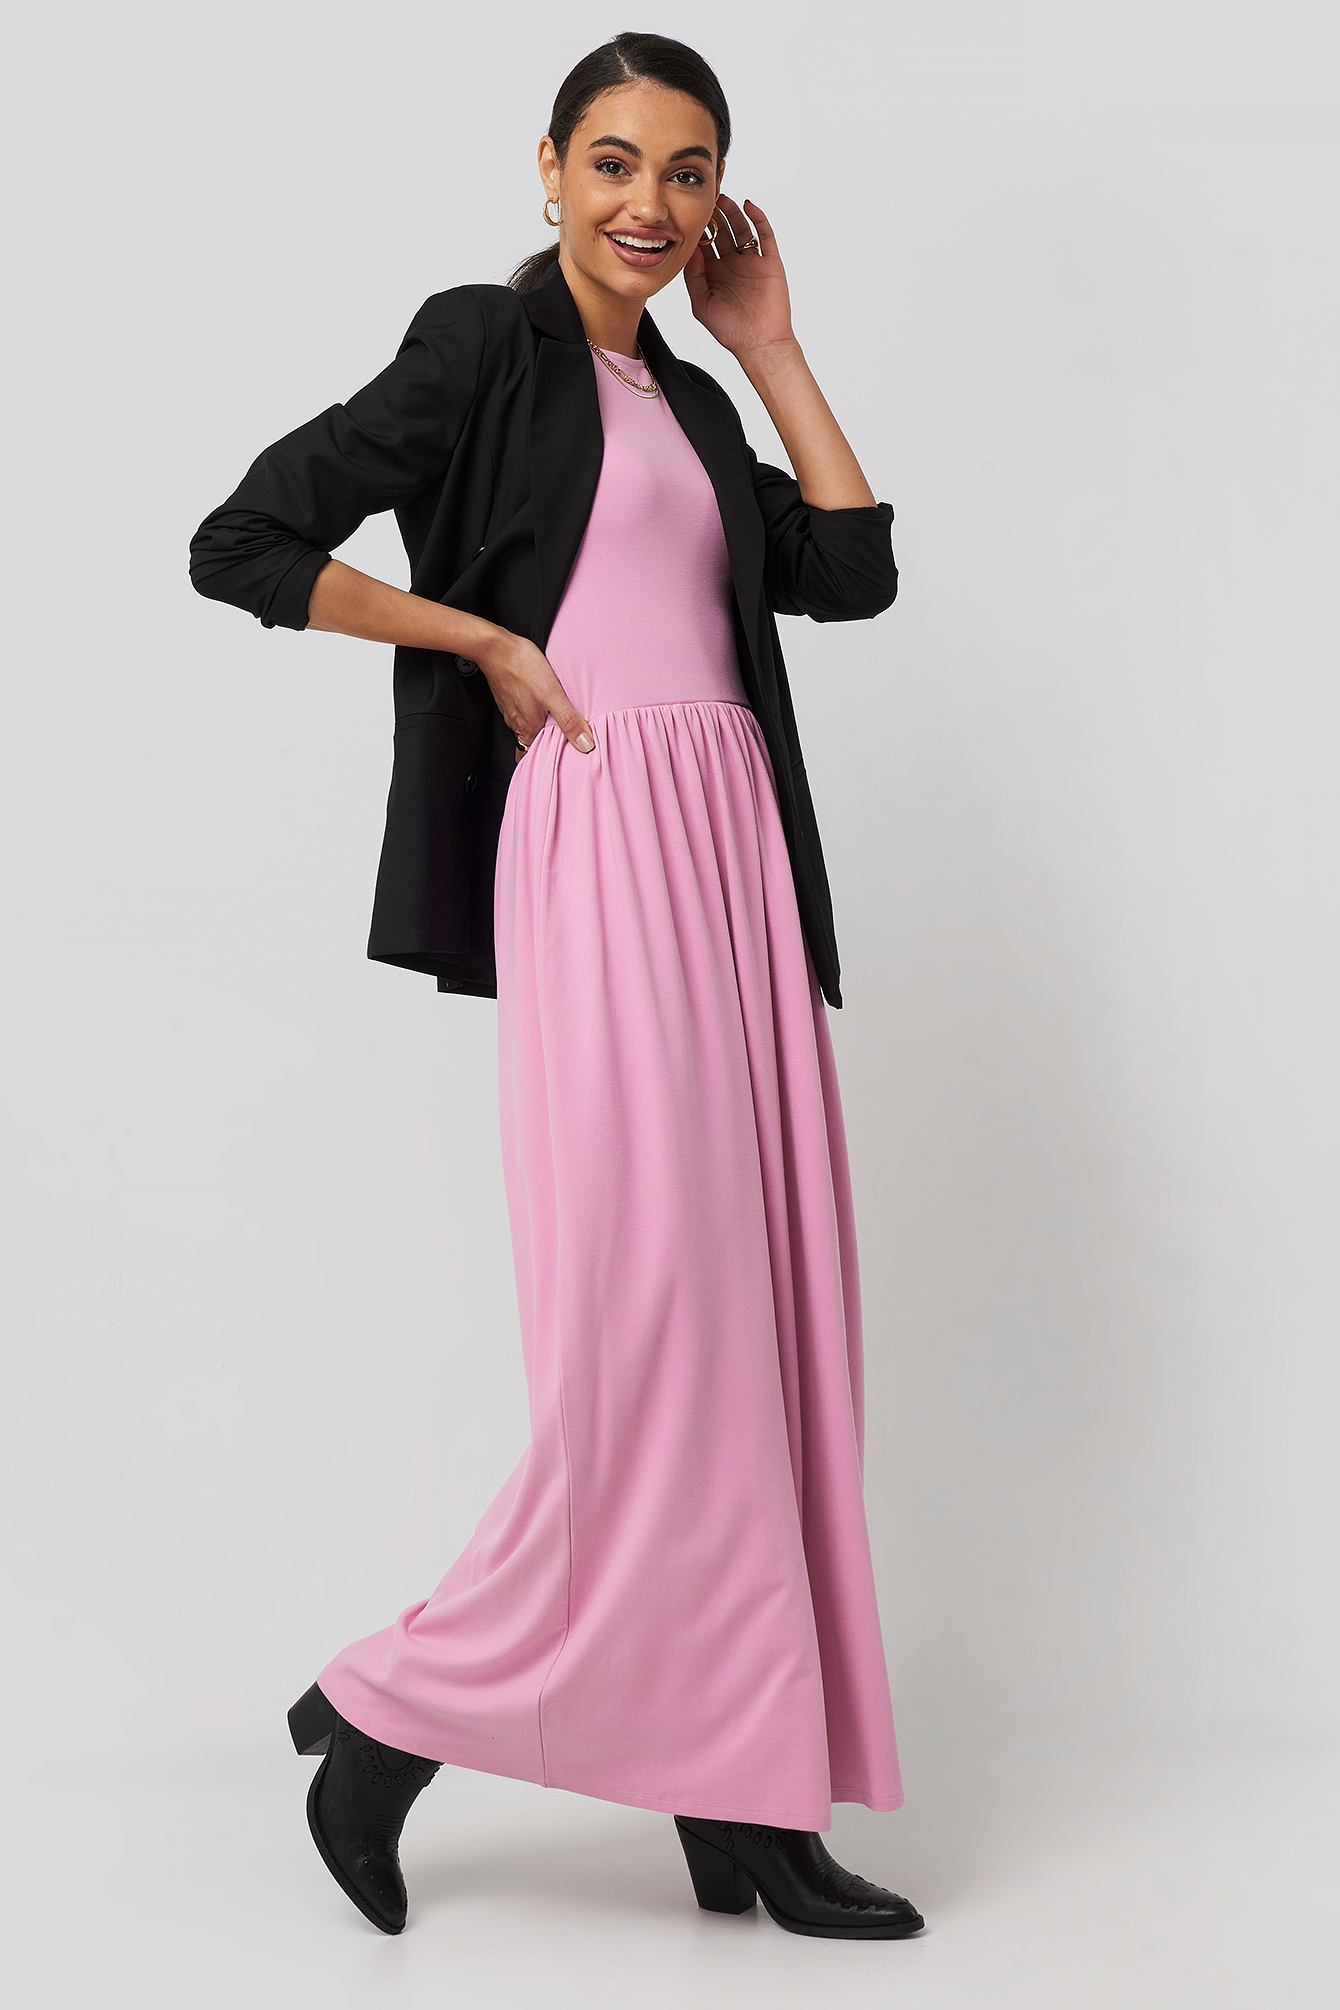 Pink Full Skirt Jersey Maxi Dress